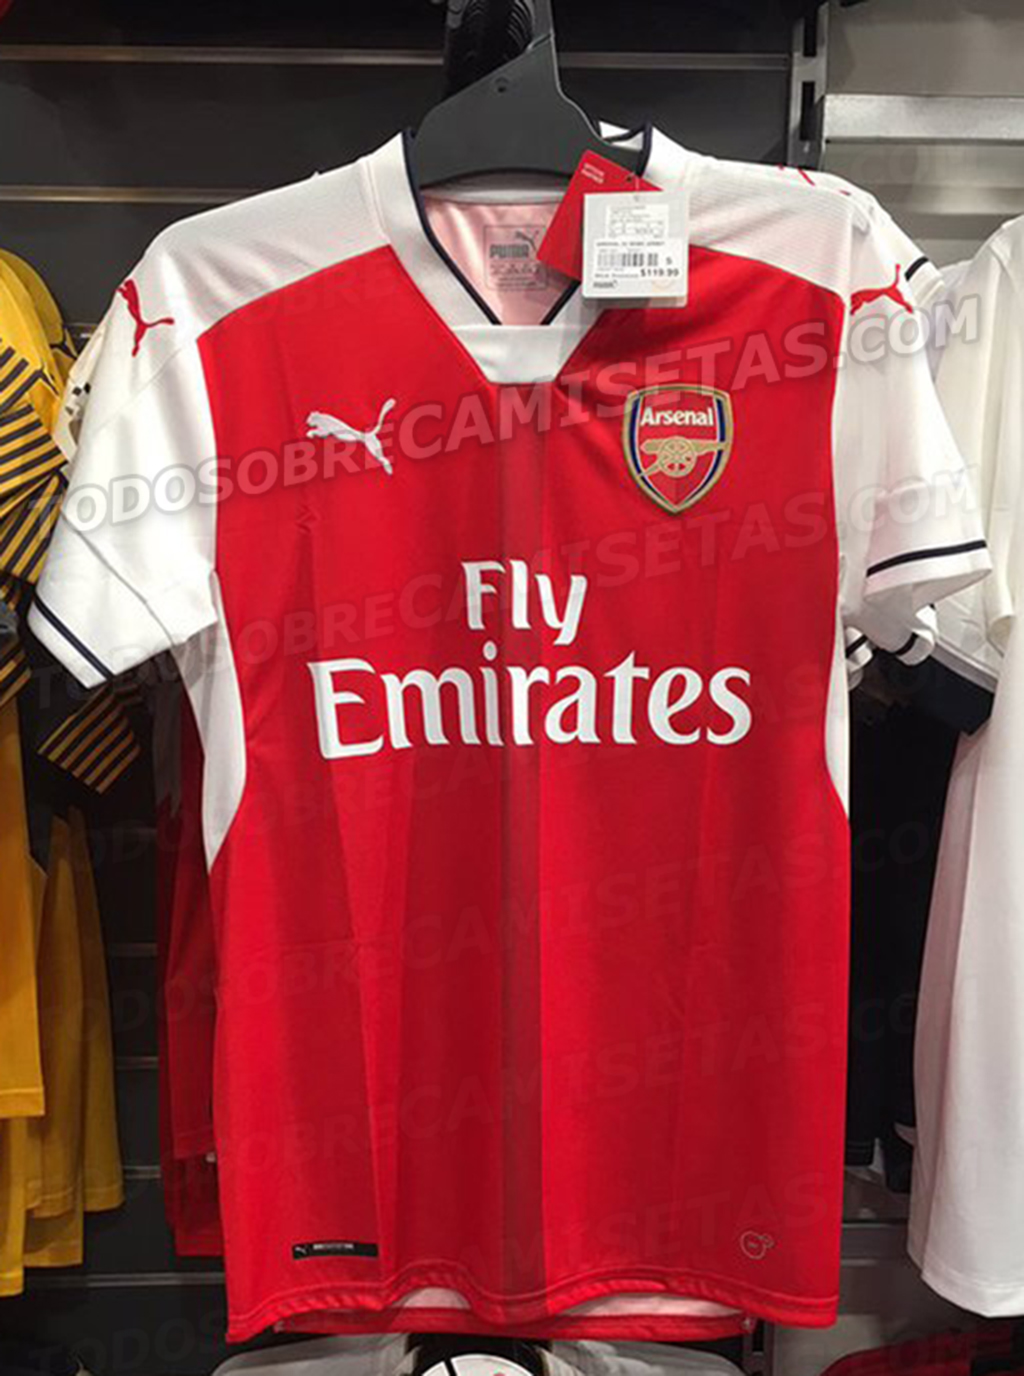 MÁS FOTOS: Camisetas Puma del Arsenal 2016-17